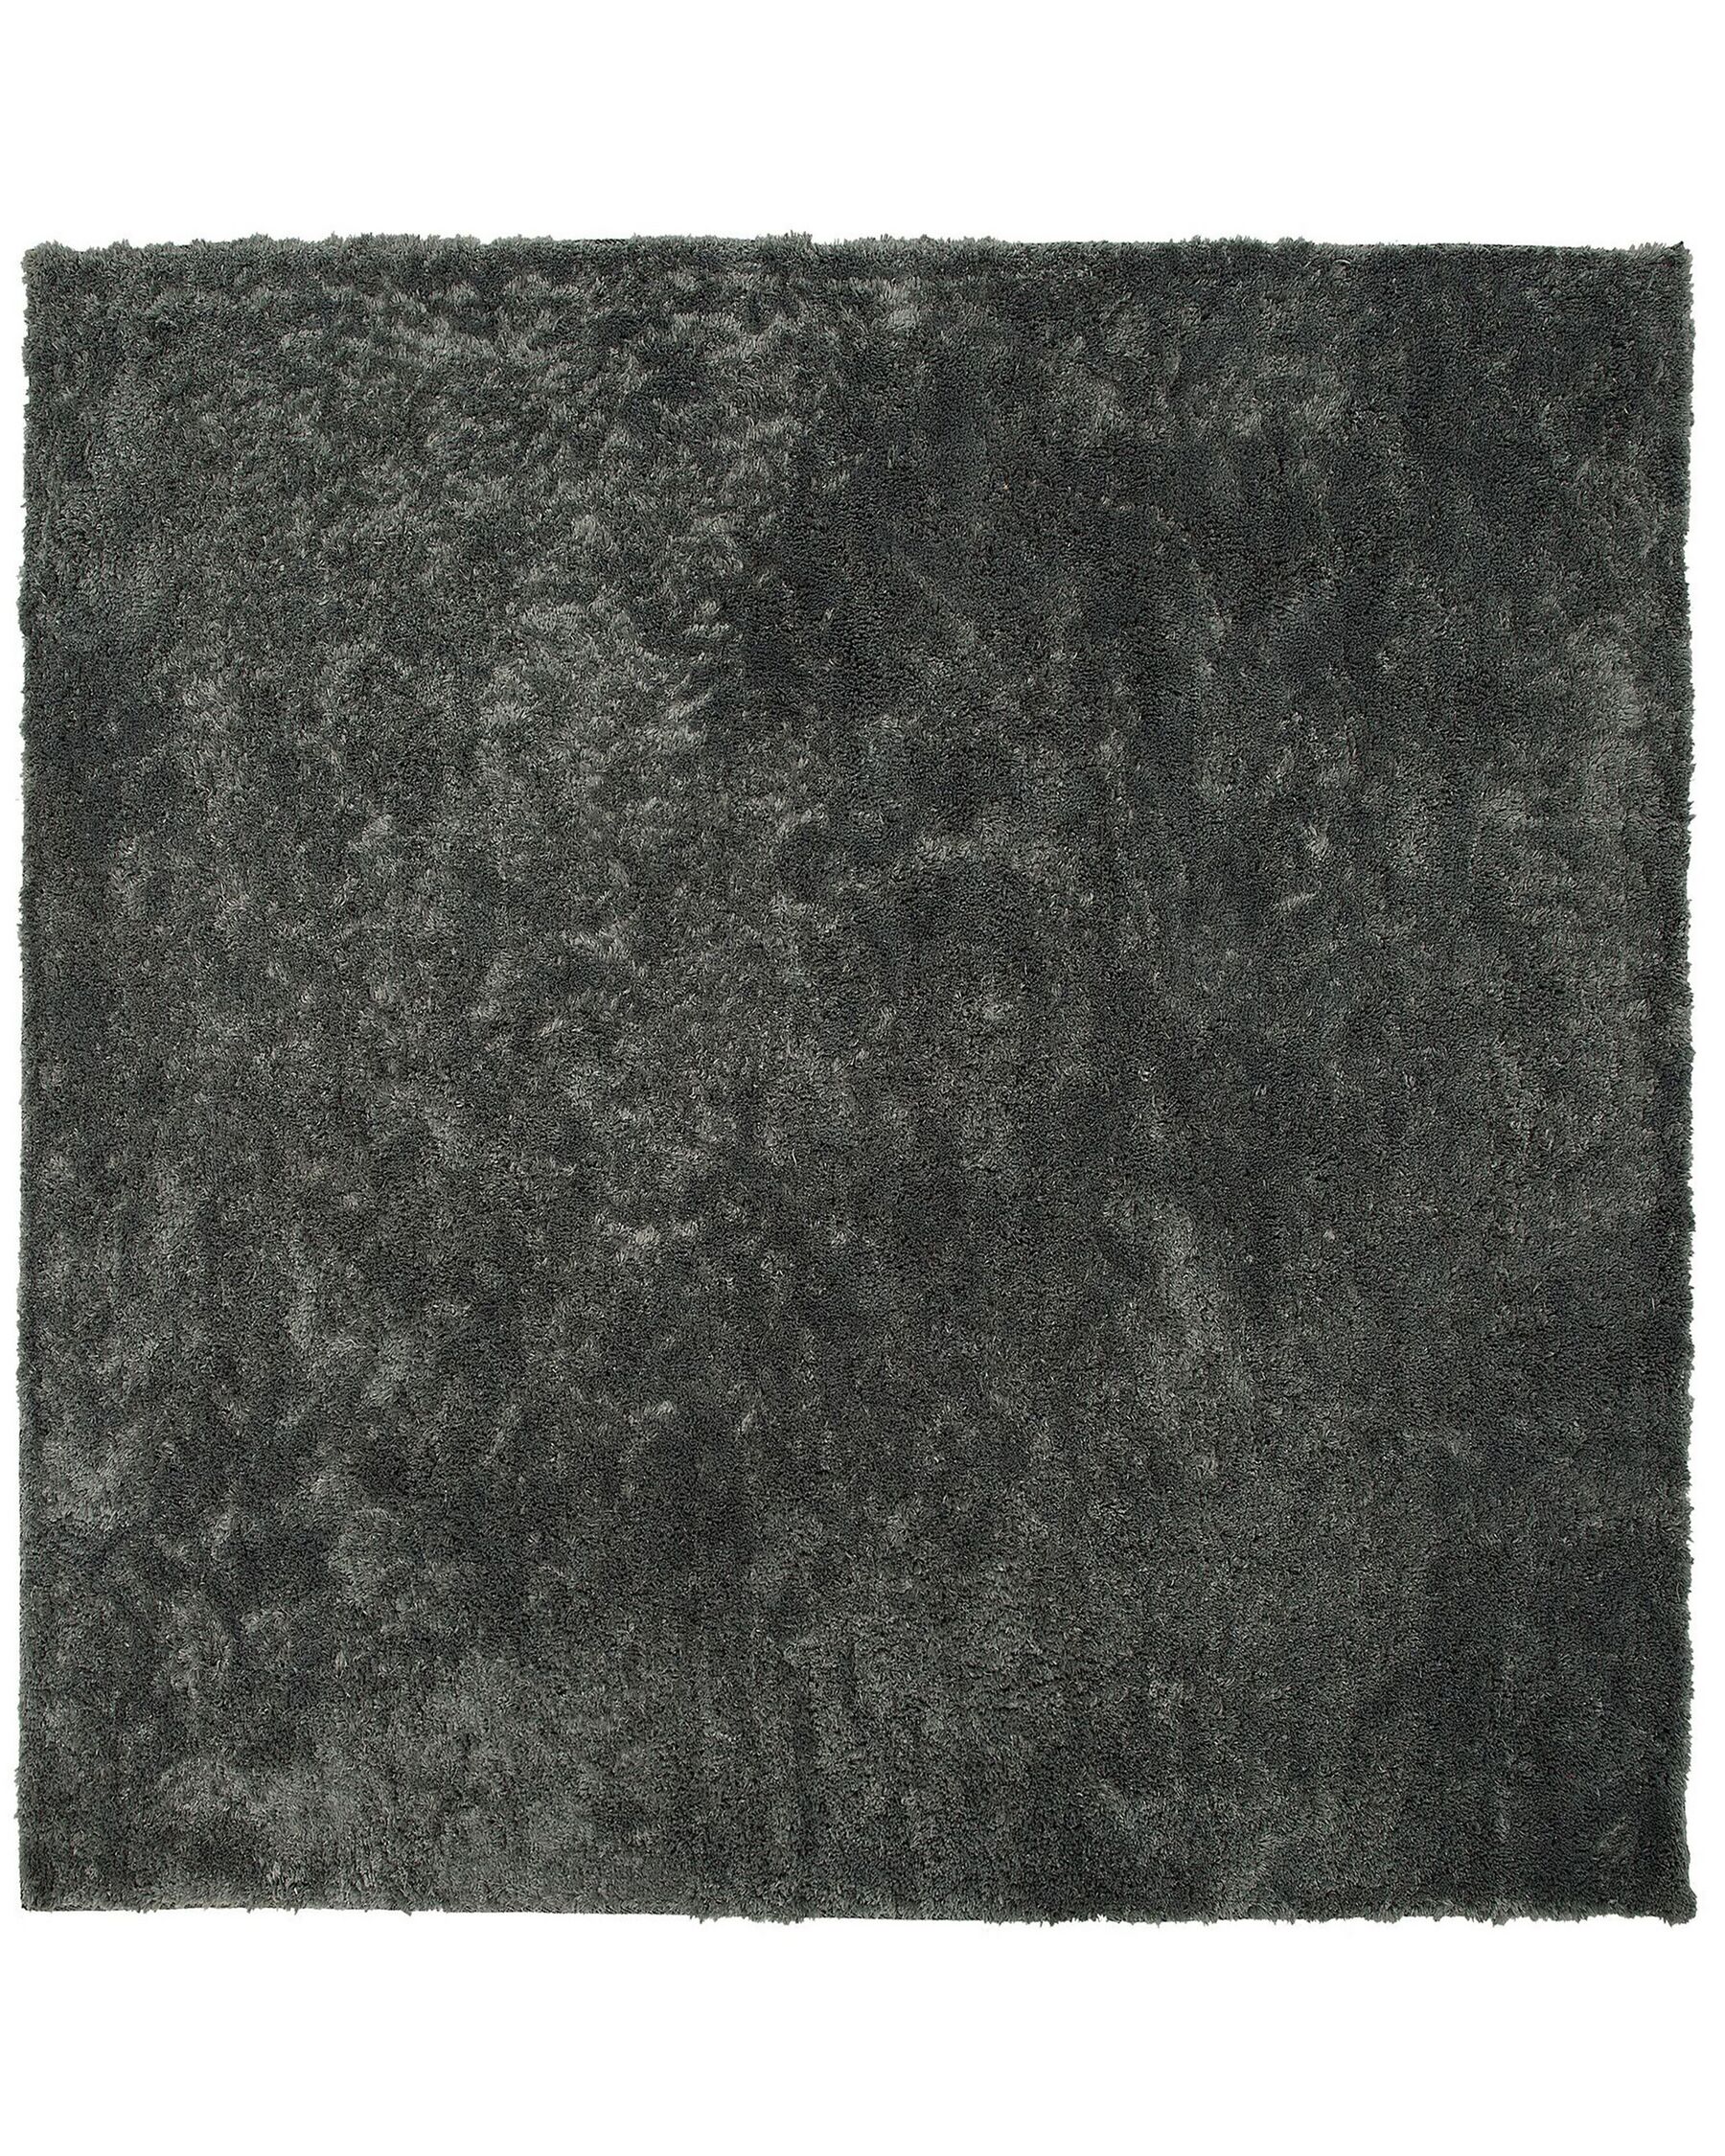 Tappeto shaggy grigio scuro 200 x 200 cm EVREN_758612